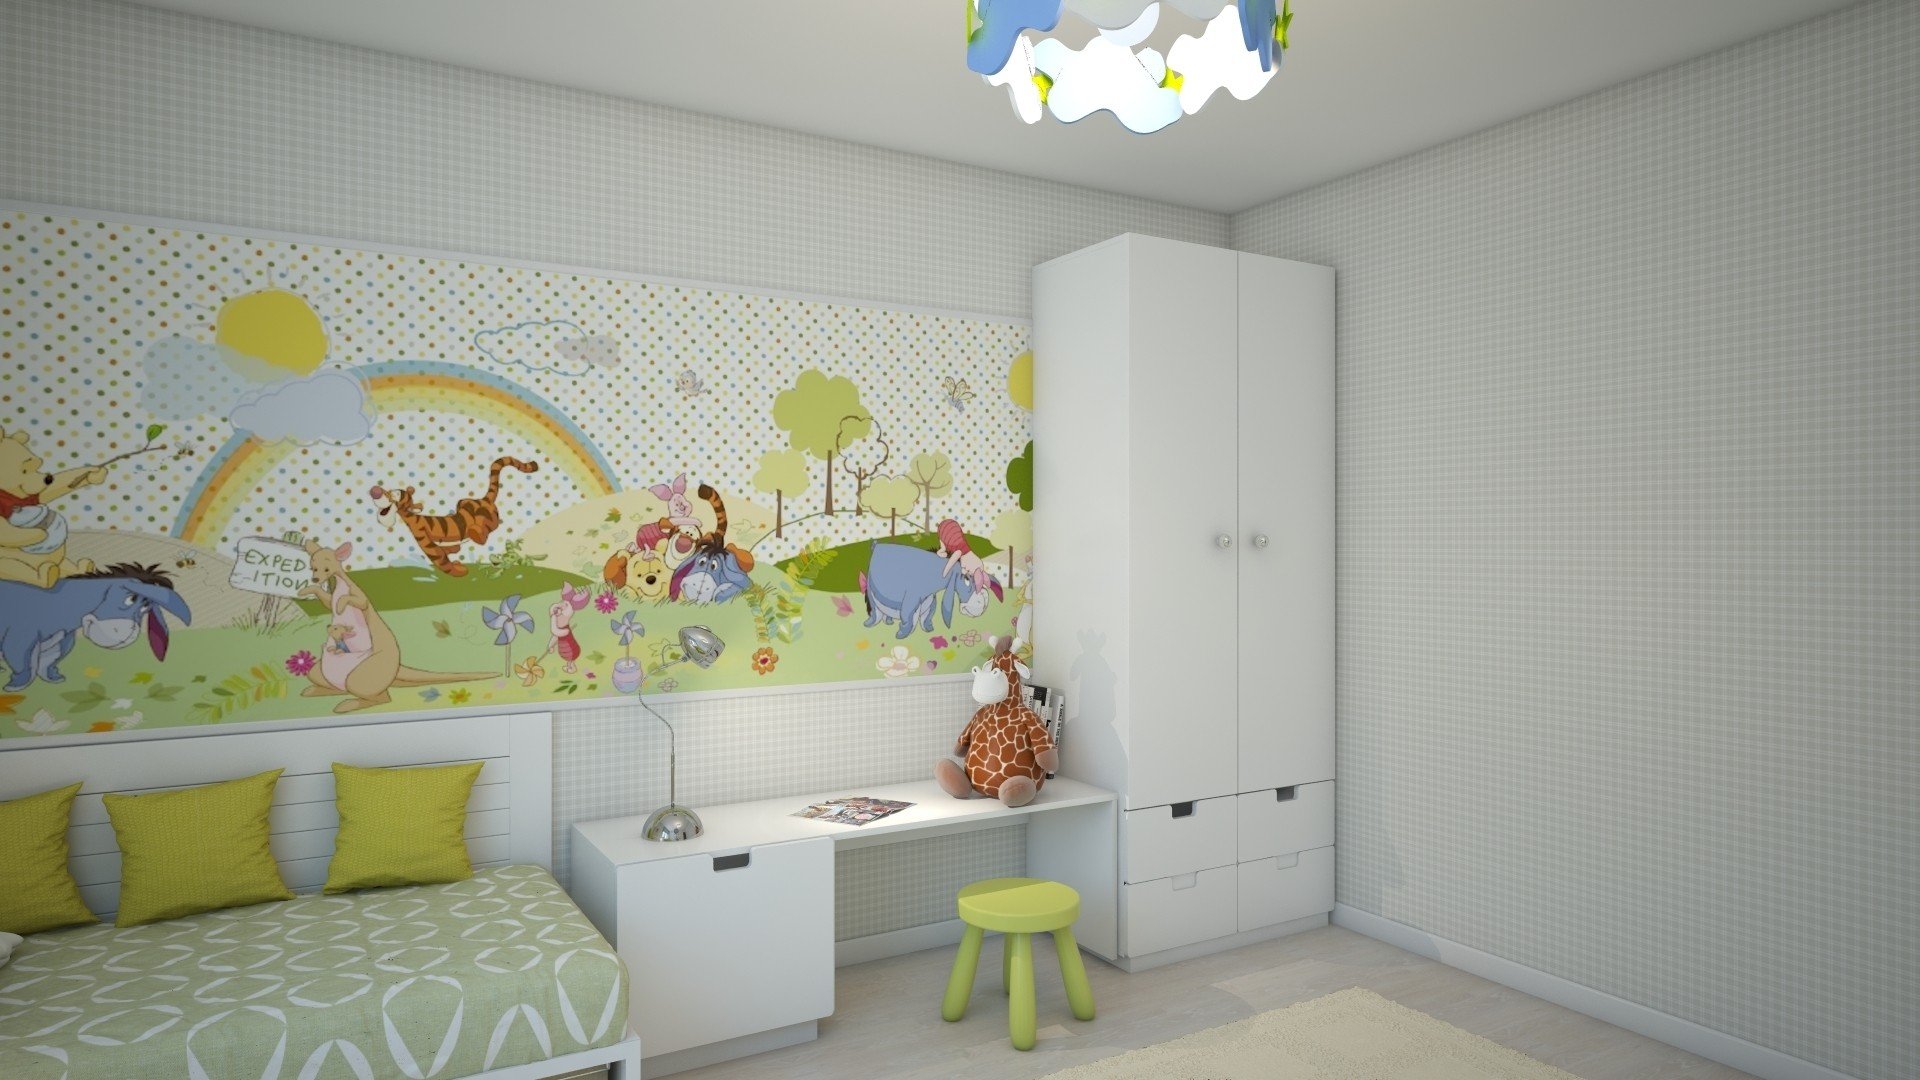 Обои комбинированные для детской комнаты: скомпоновать цвета, идеи декорирования, для мальчика